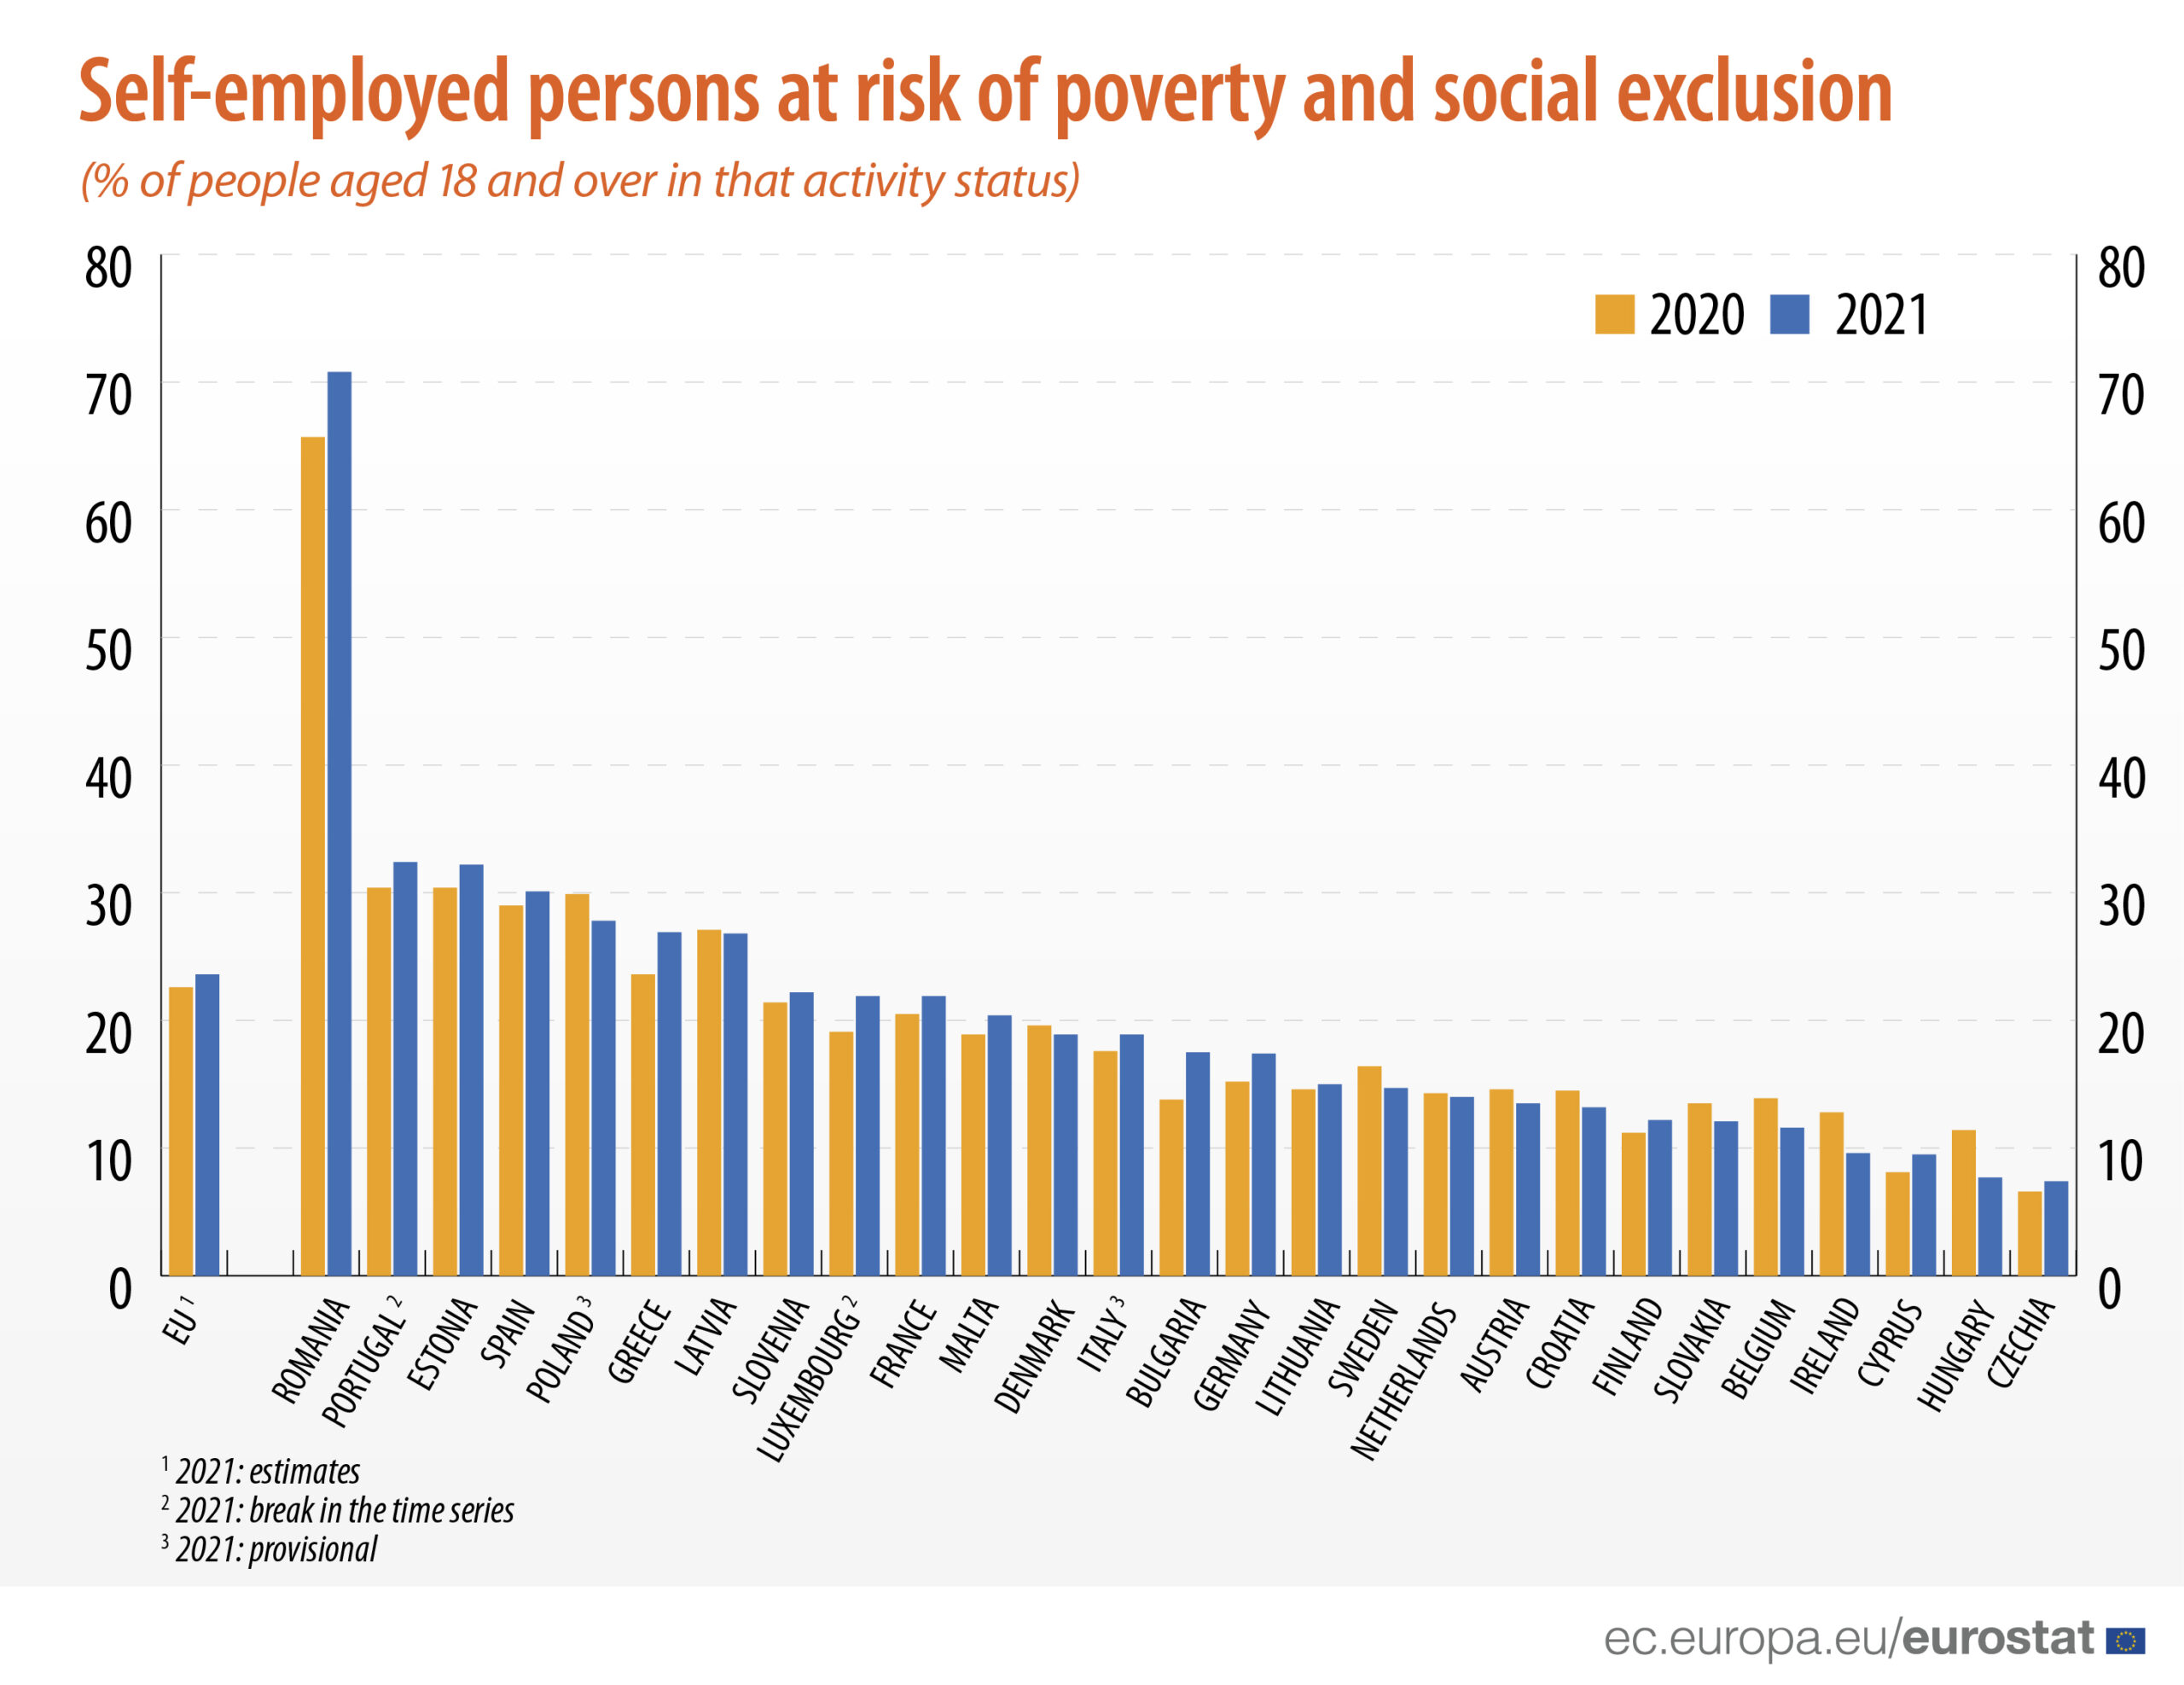 Persone a rischio di povertà o esclusione sociale nell'UE, in base allo status di attività più frequente (% delle persone di 18 anni e oltre in tale stato di attività)